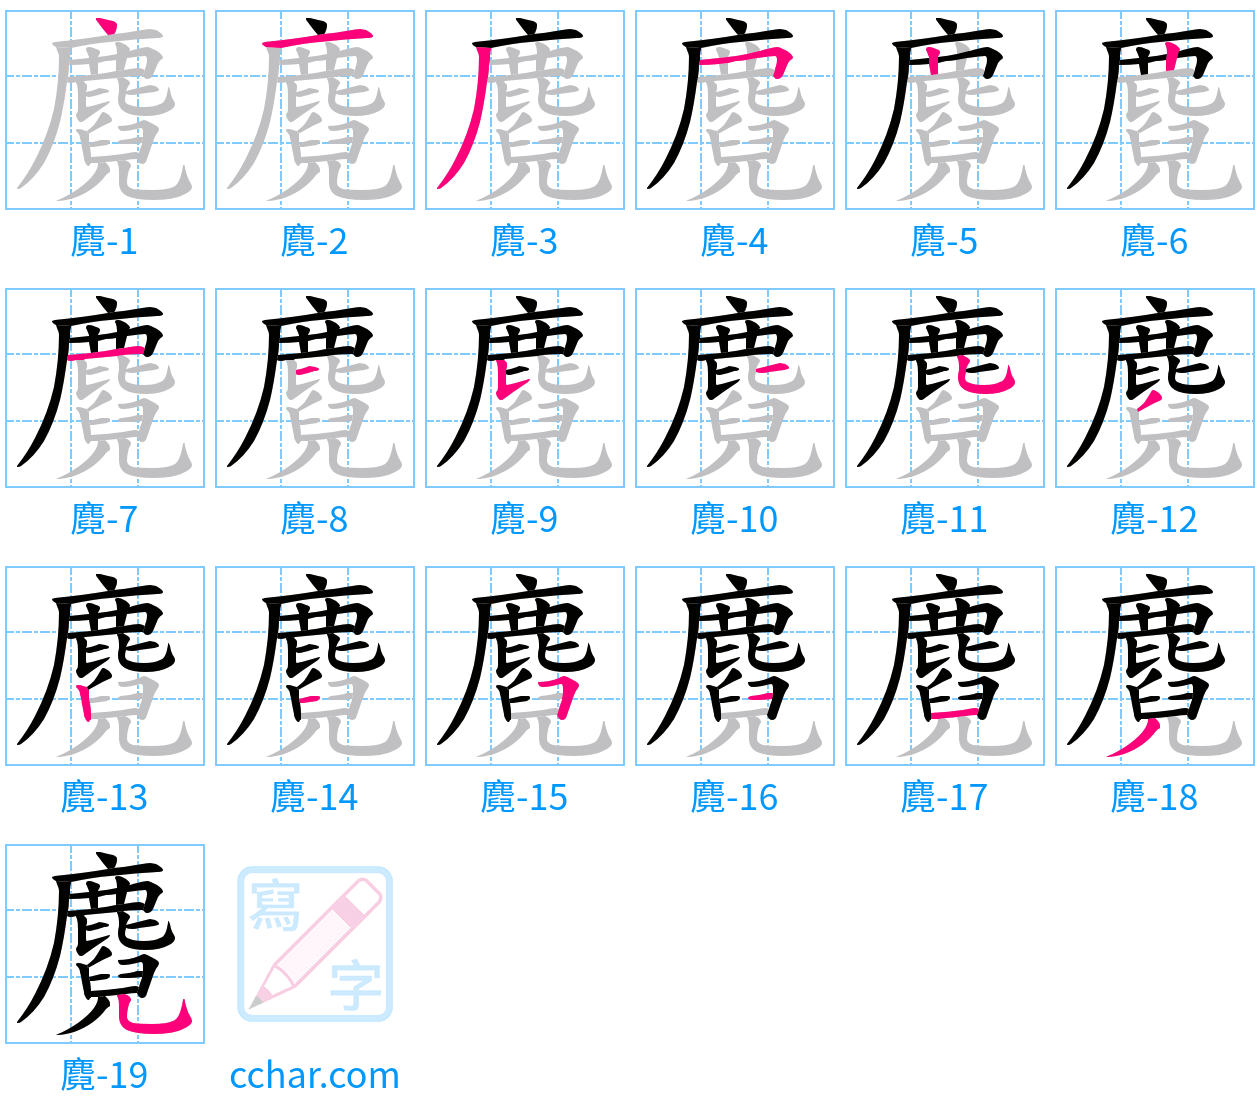 麑 stroke order step-by-step diagram